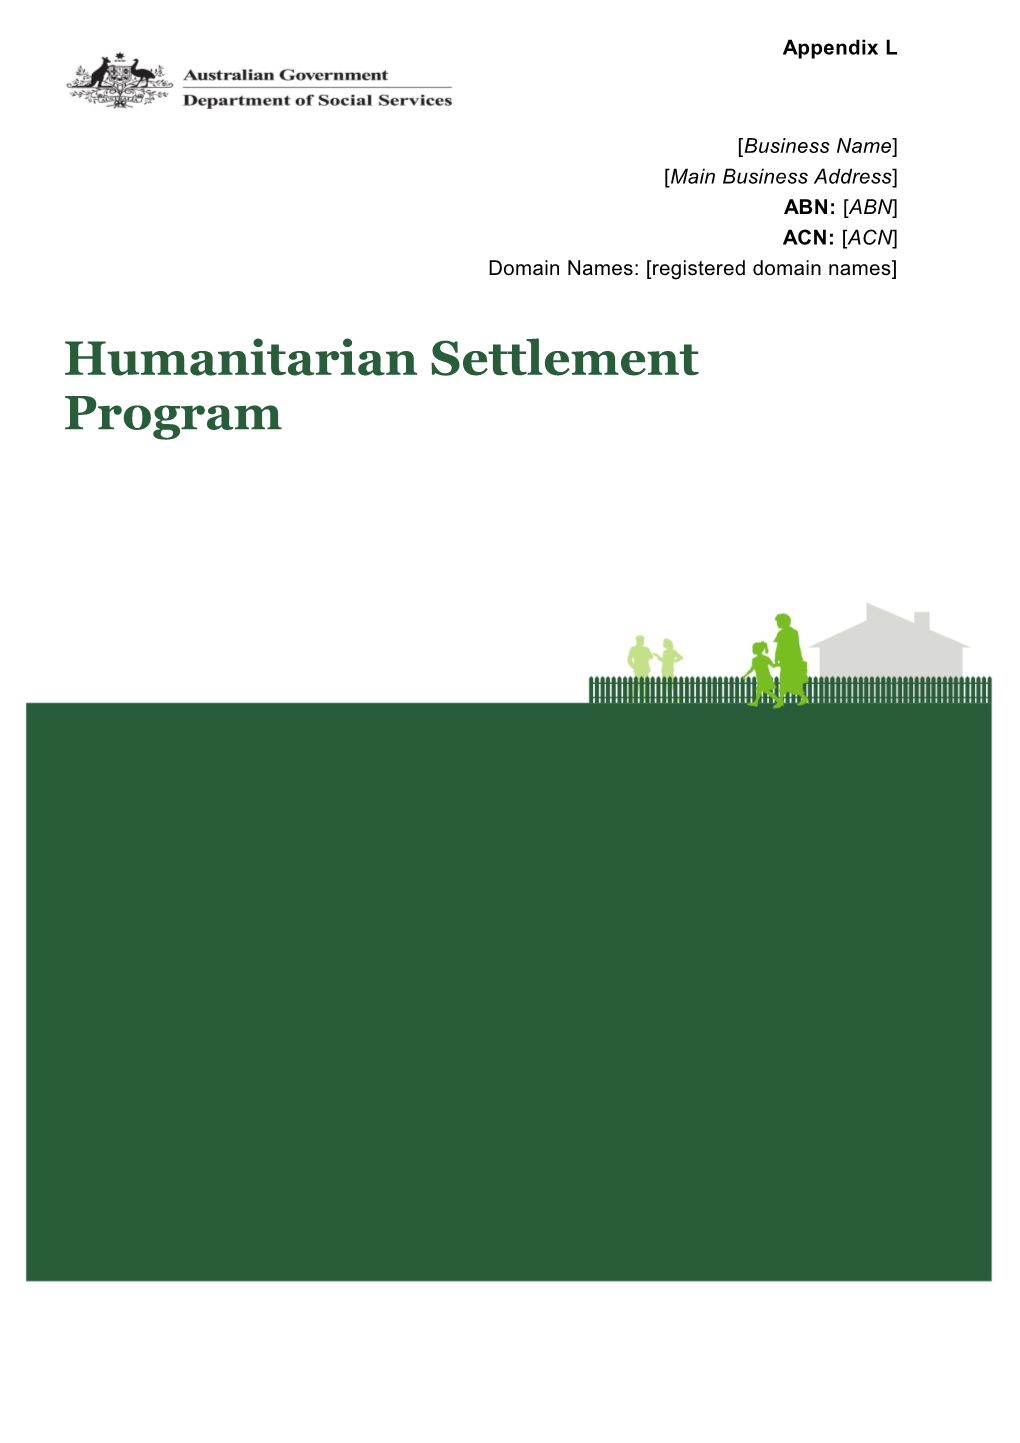 Humanitarian Settlement Program Business Plan for Service Provider Name